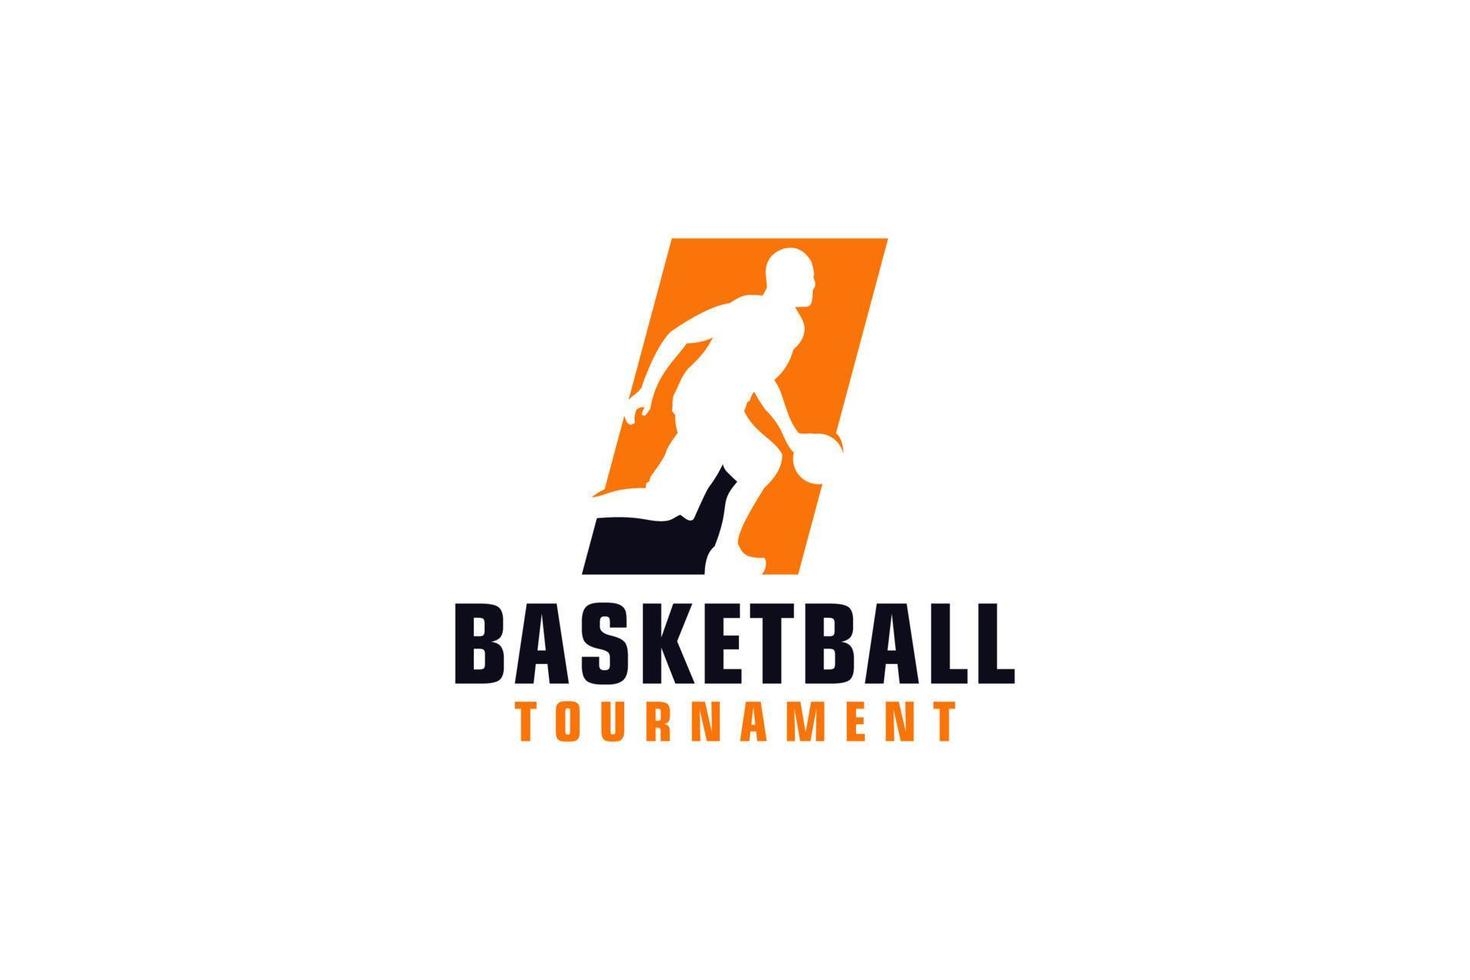 Buchstabe i mit Basketball-Logo-Design. Vektordesign-Vorlagenelemente für Sportteams oder Corporate Identity. vektor